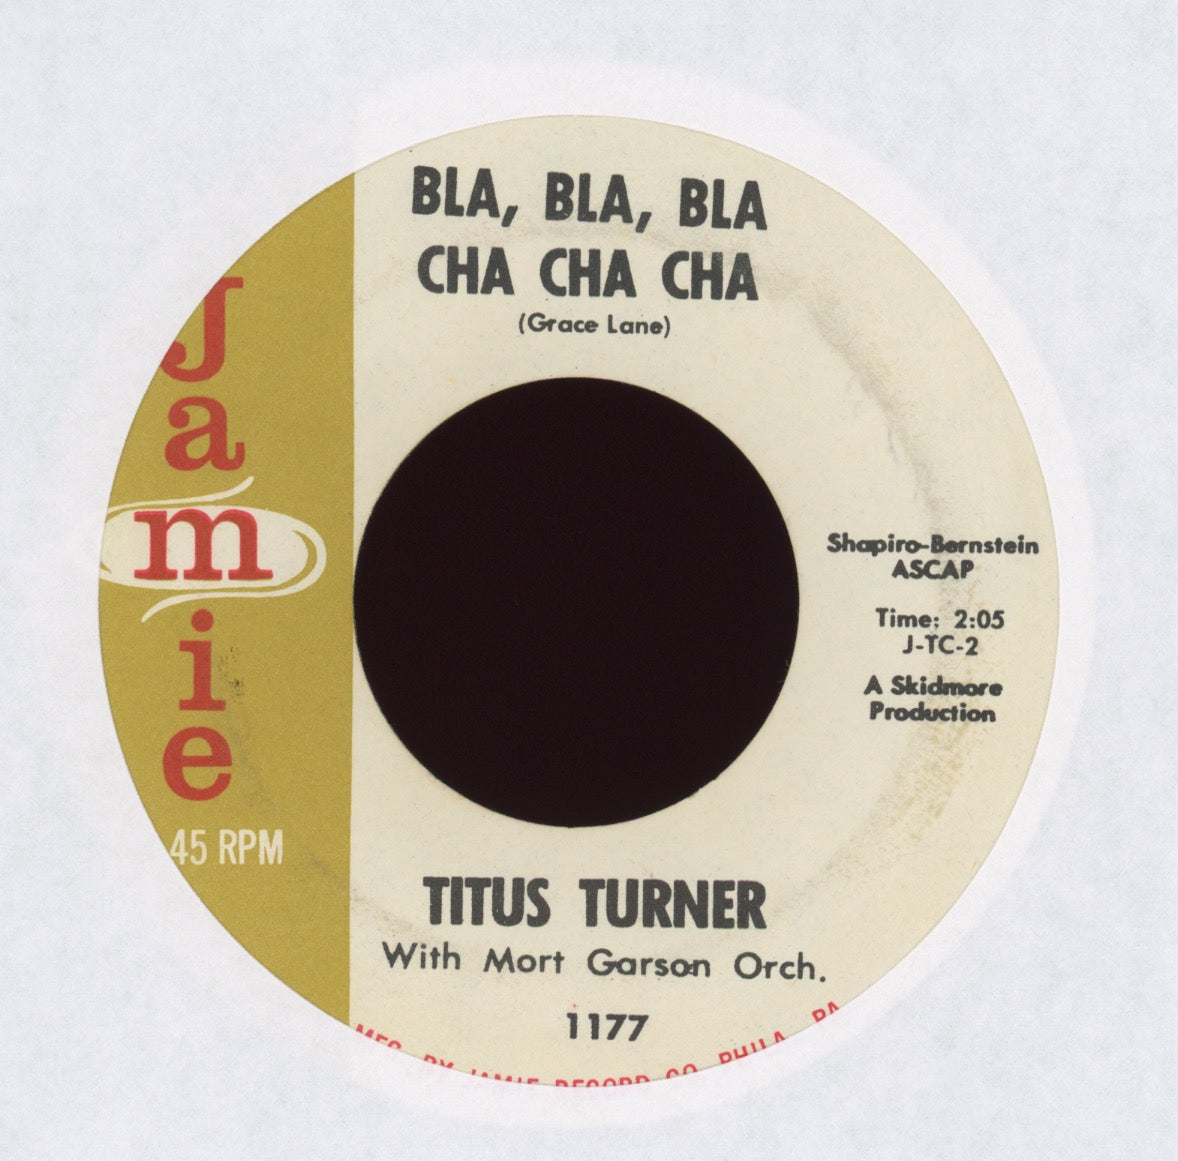 Titus Turner - Bla, Bla, Bla Cha Cha Cha on Jamie